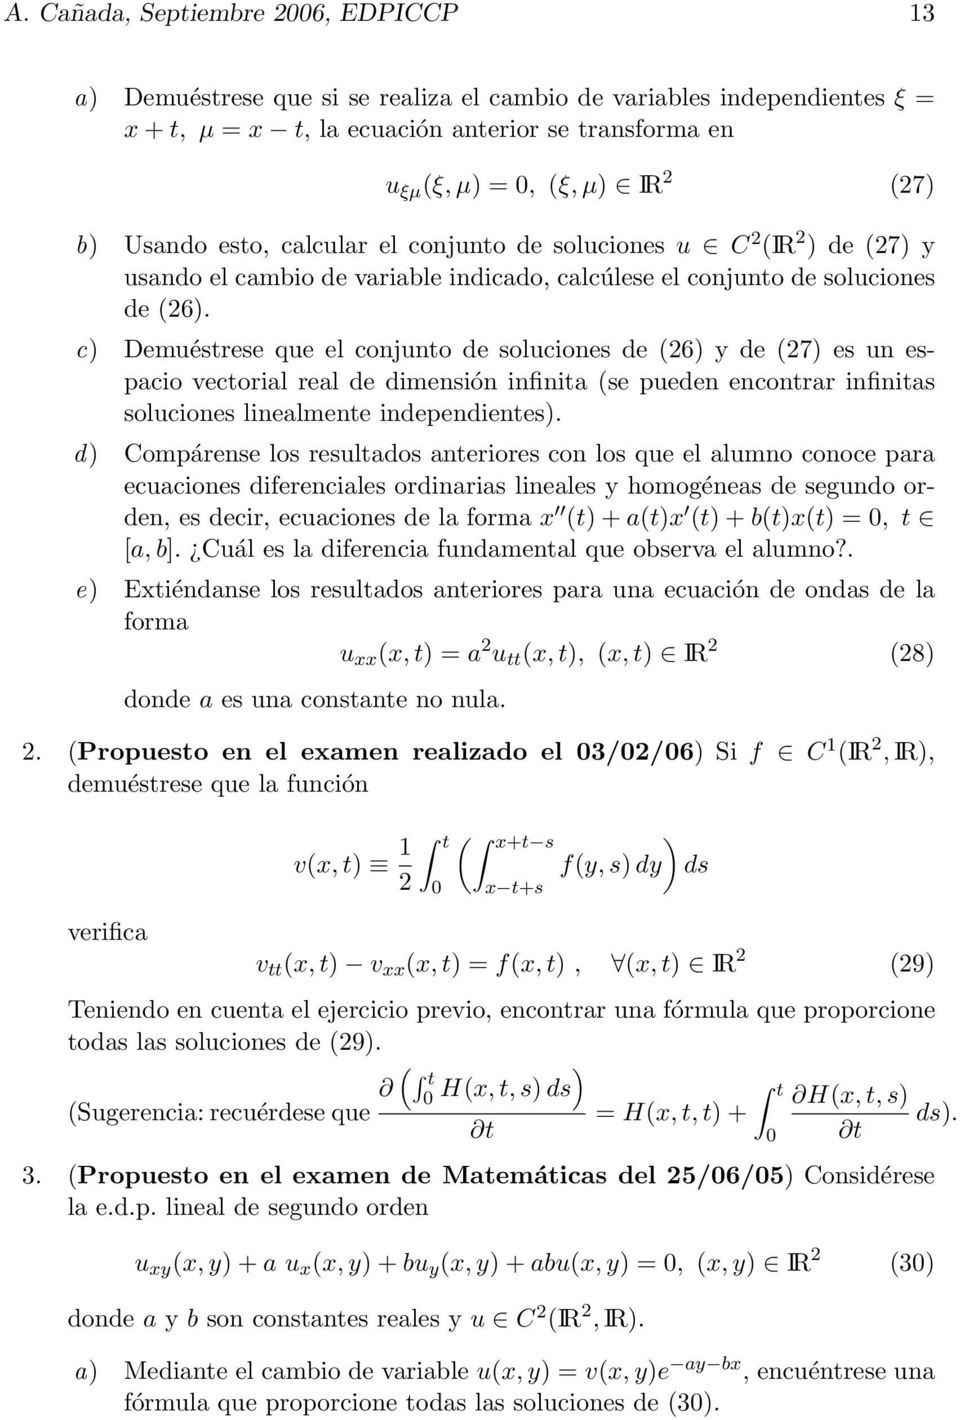 c) Demuéstrese que el conjunto de soluciones de (26) y de (27) es un espacio vectorial real de dimensión infinita (se pueden encontrar infinitas soluciones linealmente independientes).